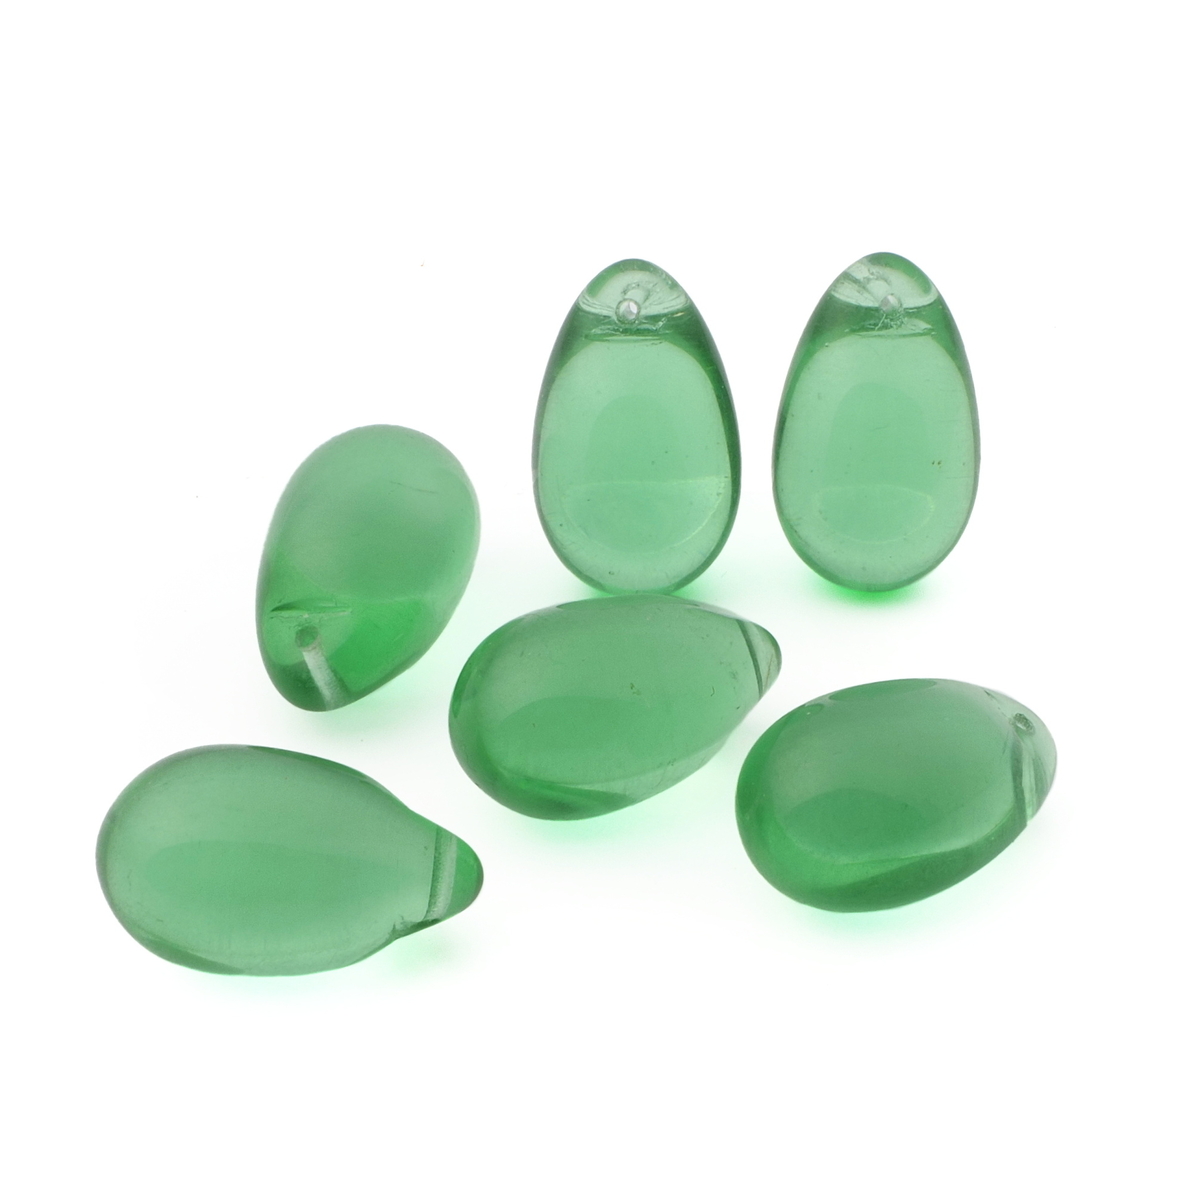 Lot (6) Vintage Czech bicolor uranium green glass grape Chandelier fruit lamp prism beads 23mm